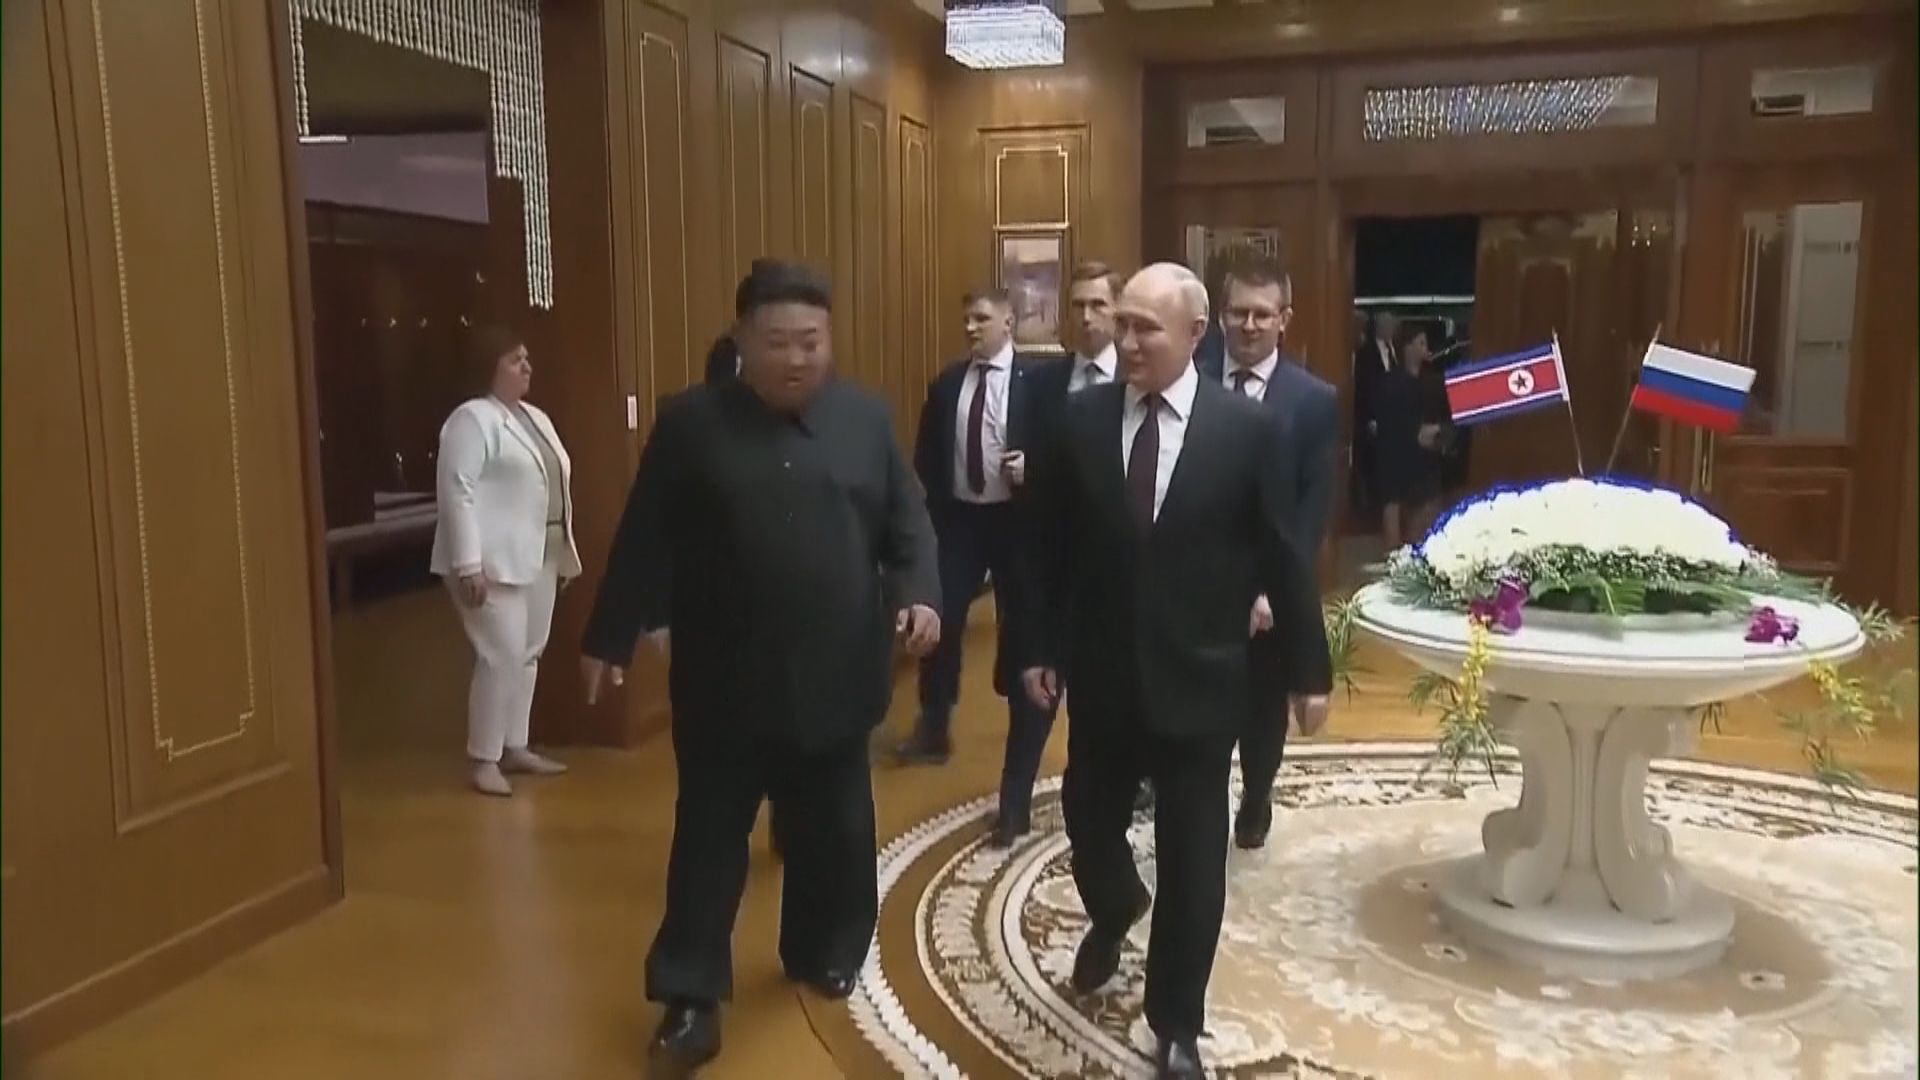 俄羅斯總統普京與北韓領袖金正恩會談